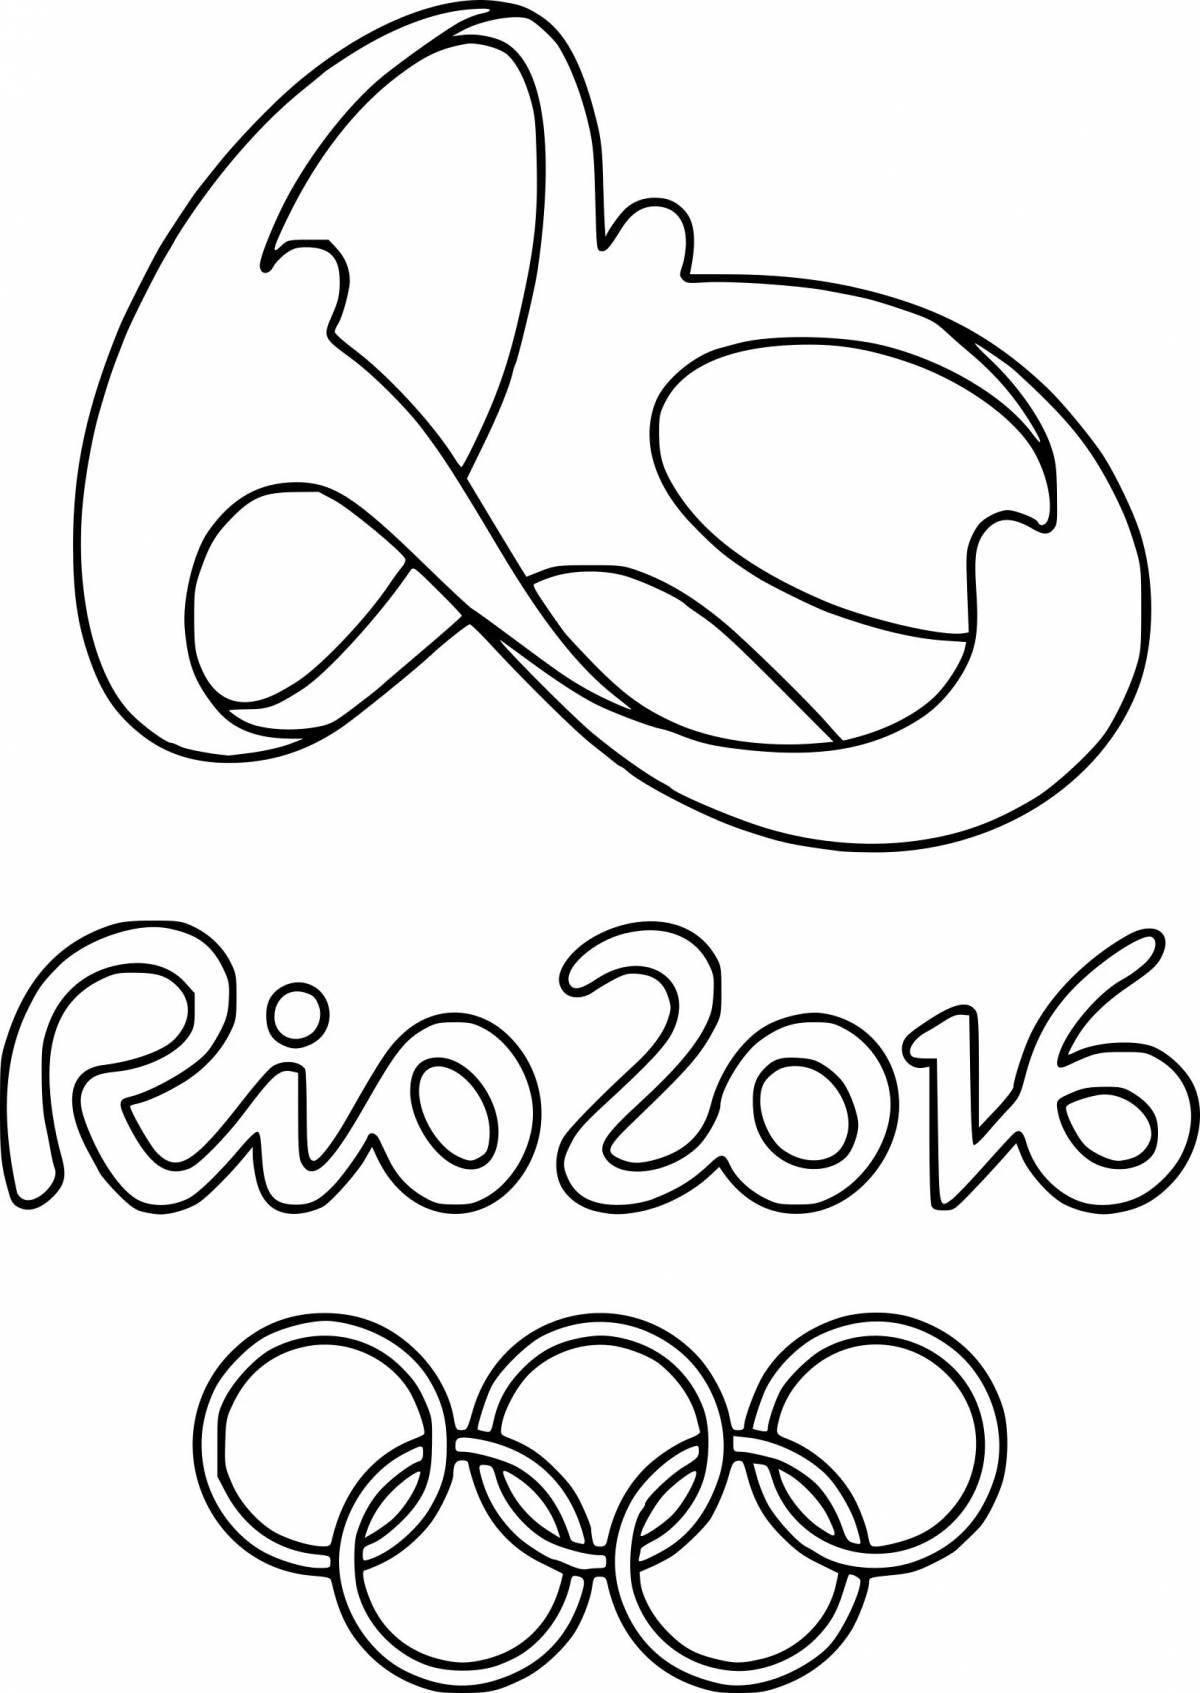 Раскраска блестящие кольца олимпийских игр